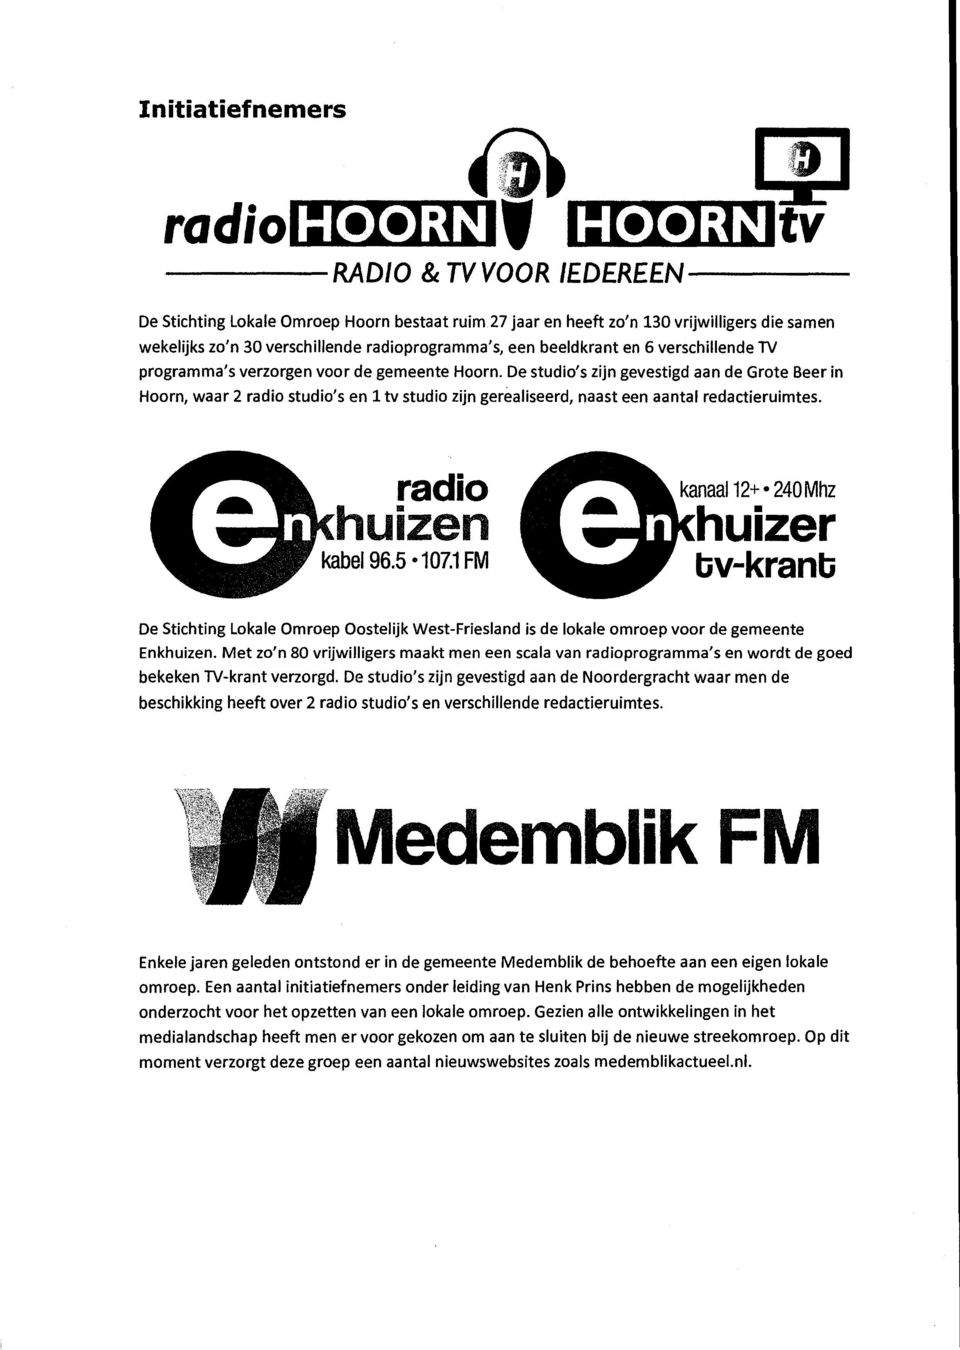 De studio's zijn gevestigd aan de Grote Beer in Hoorn, waar 2 radio studio's en 1 tv studio zijn gerealiseerd, naast een aantal redactieruimtes. e radio khuizen V kabel 96.5-107.